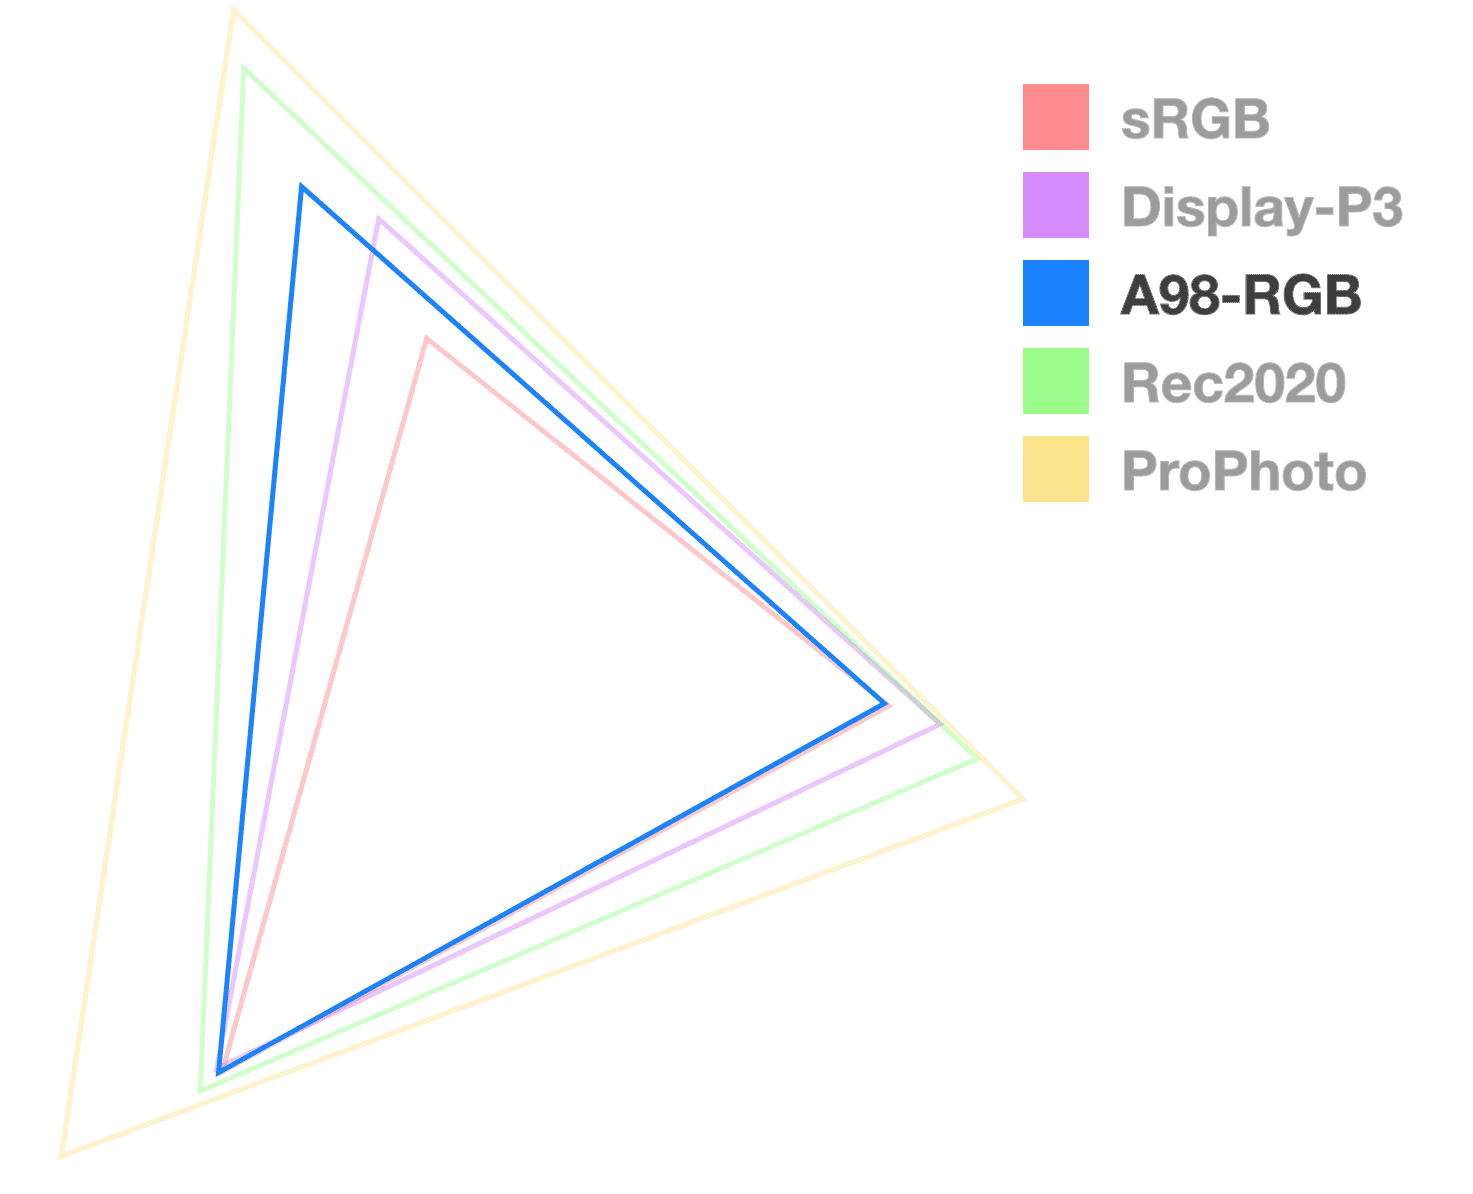 De A98-driehoek is de enige die volledig ondoorzichtig is, om de grootte van het kleurengamma te helpen visualiseren. Het lijkt op de driehoek van de middelste maat.